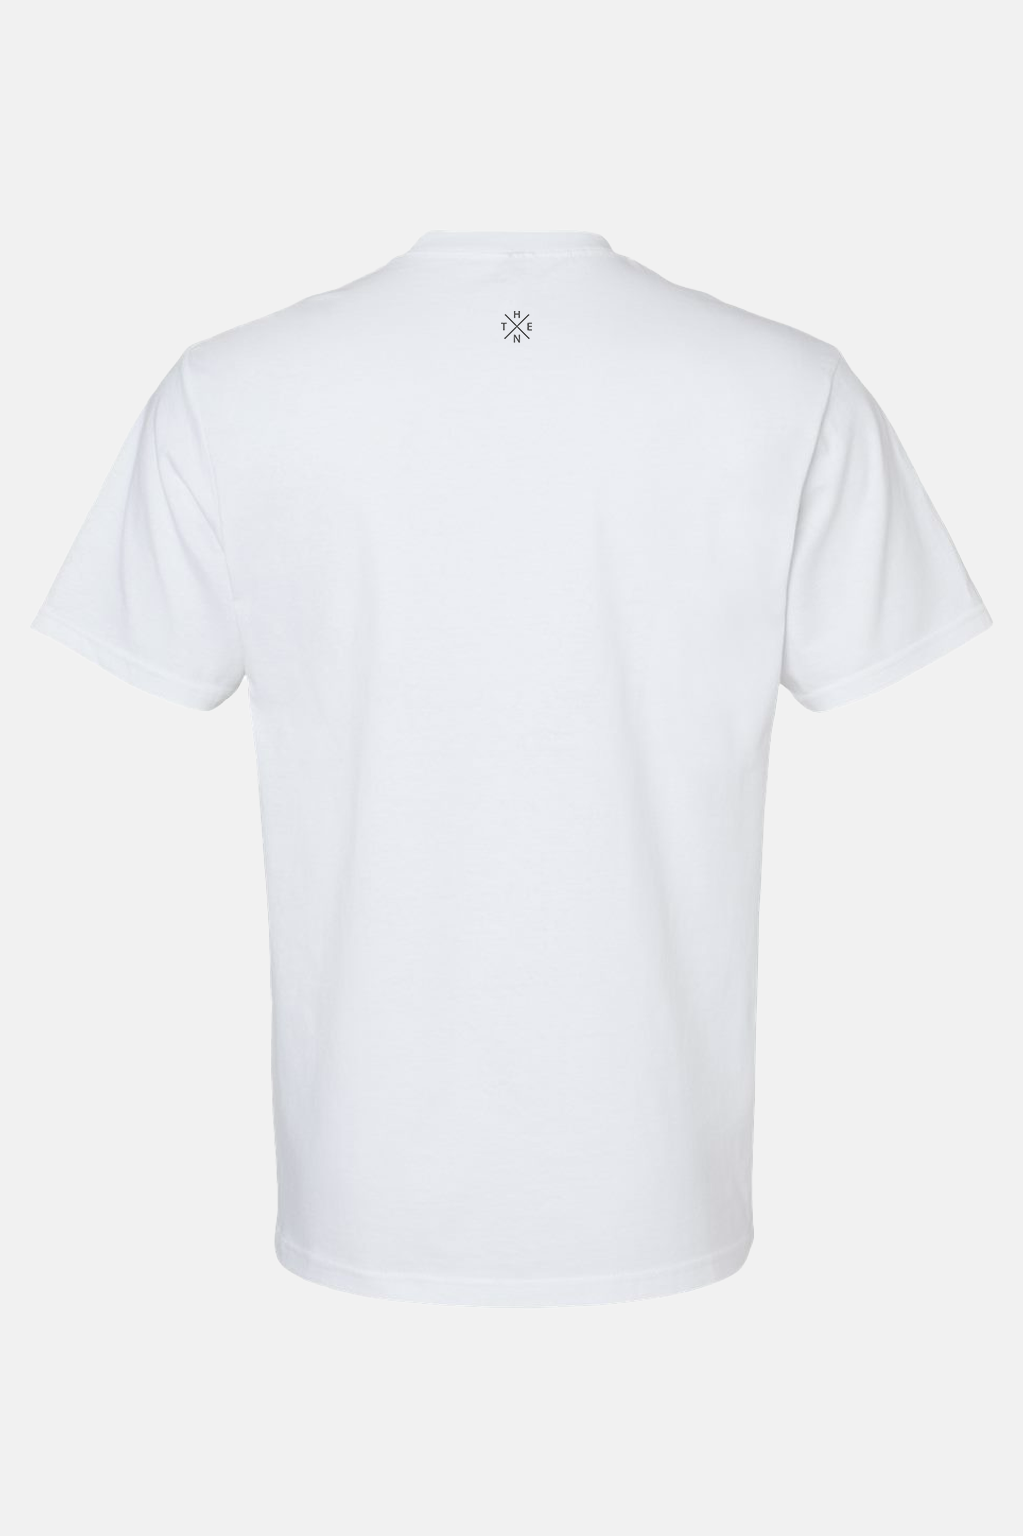 Thenx 3M XX T-Shirt - White - THENX